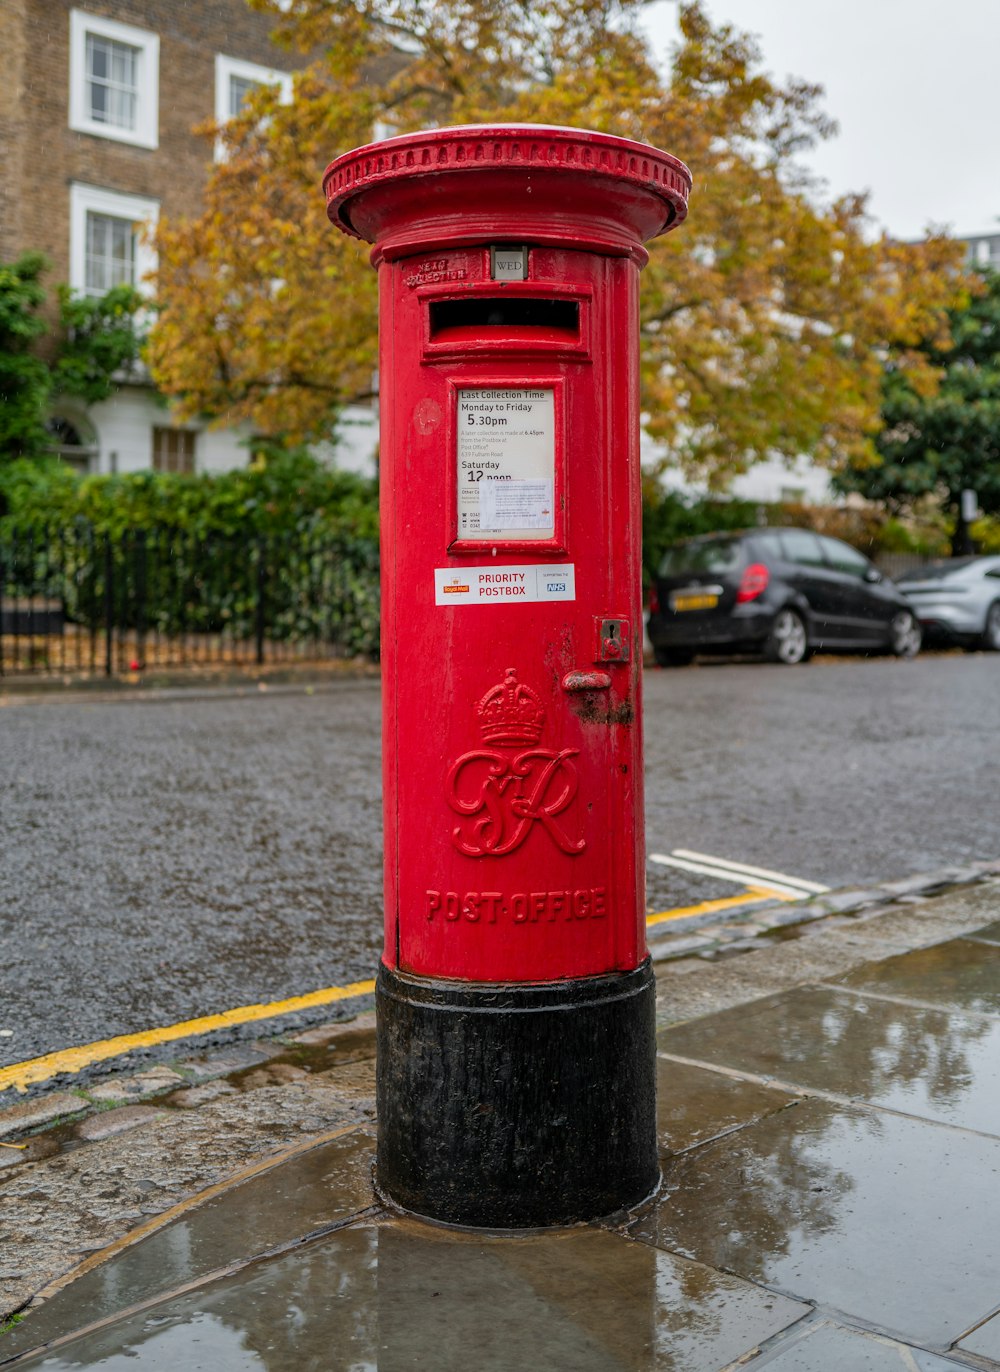 caixa de correio vermelha e preta